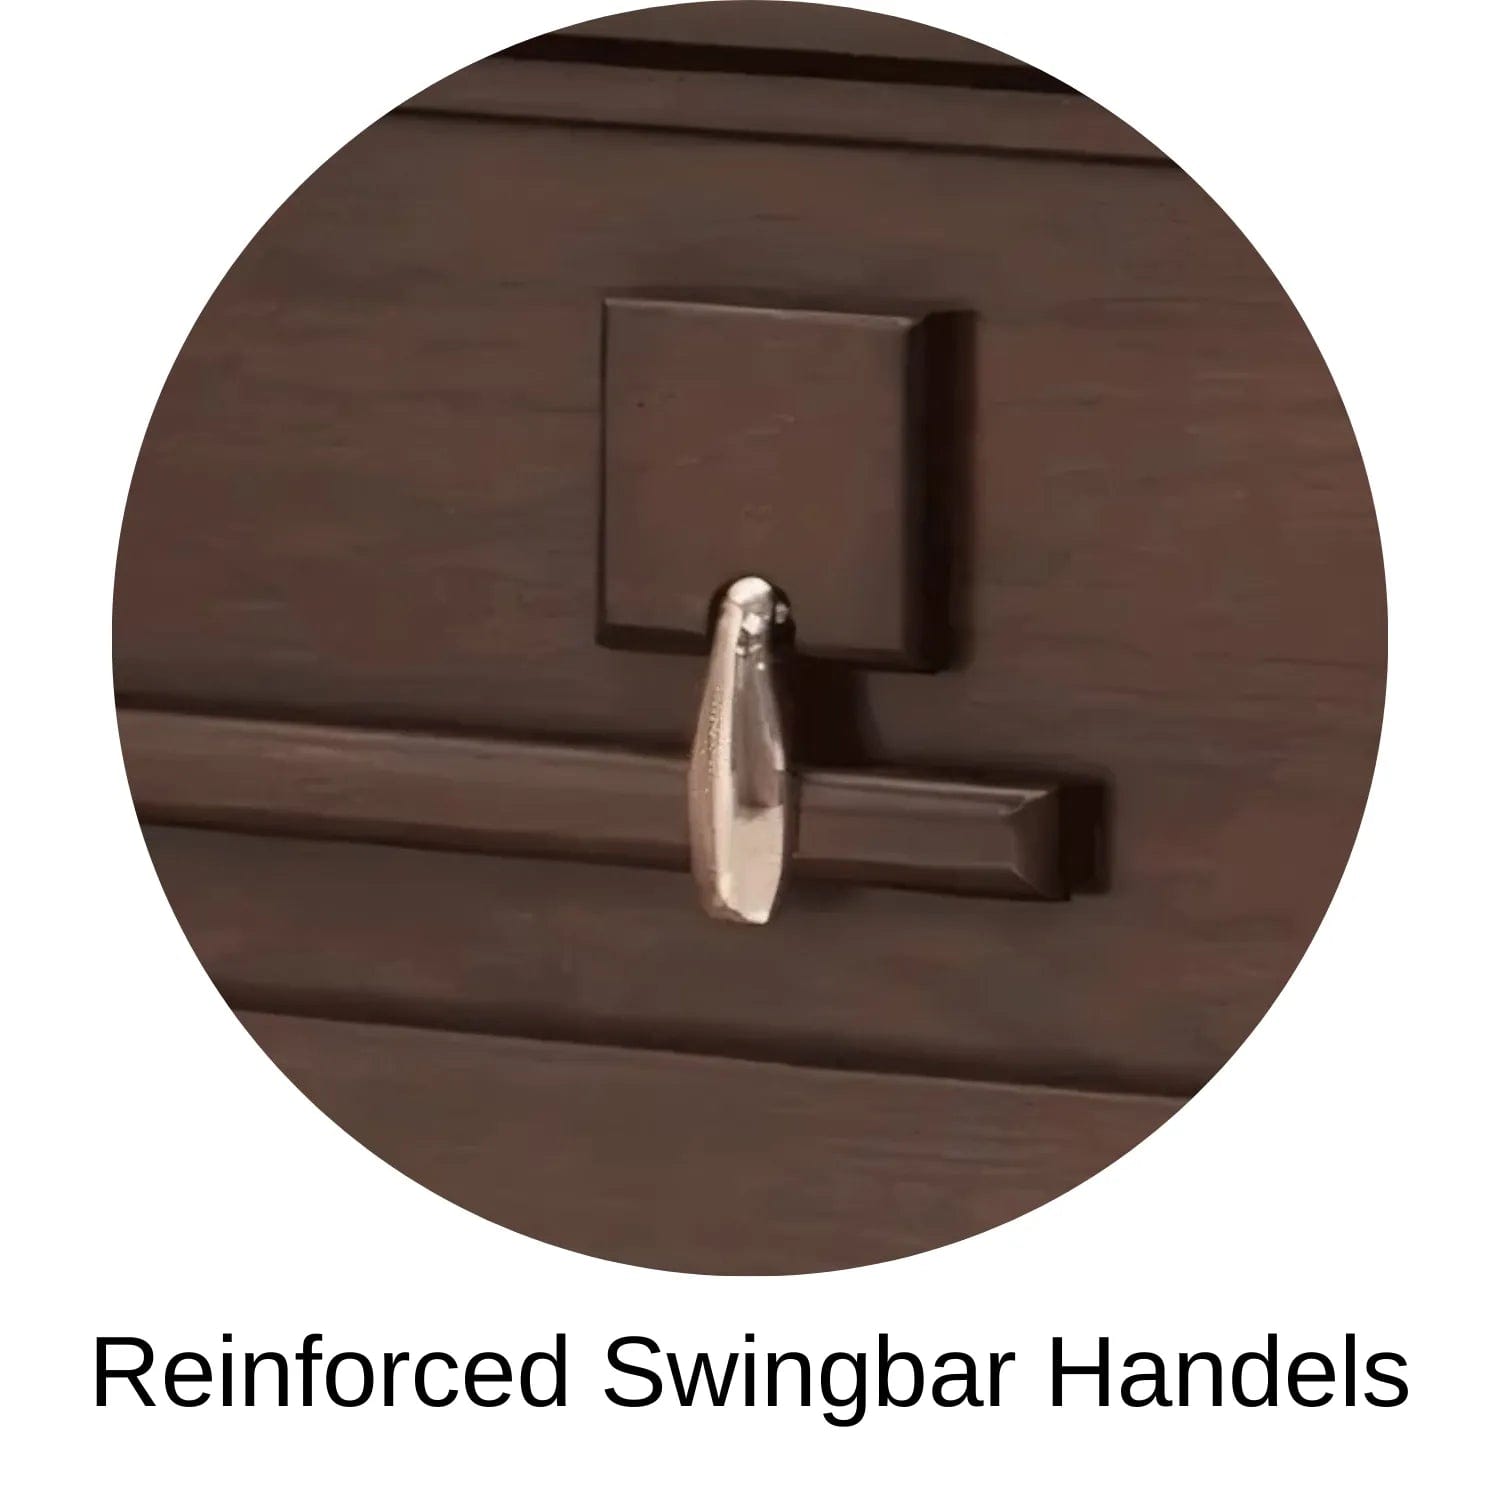 Reinforced Swingbar Handles Of Titan Pillar (Poplar) Series Wood Casket